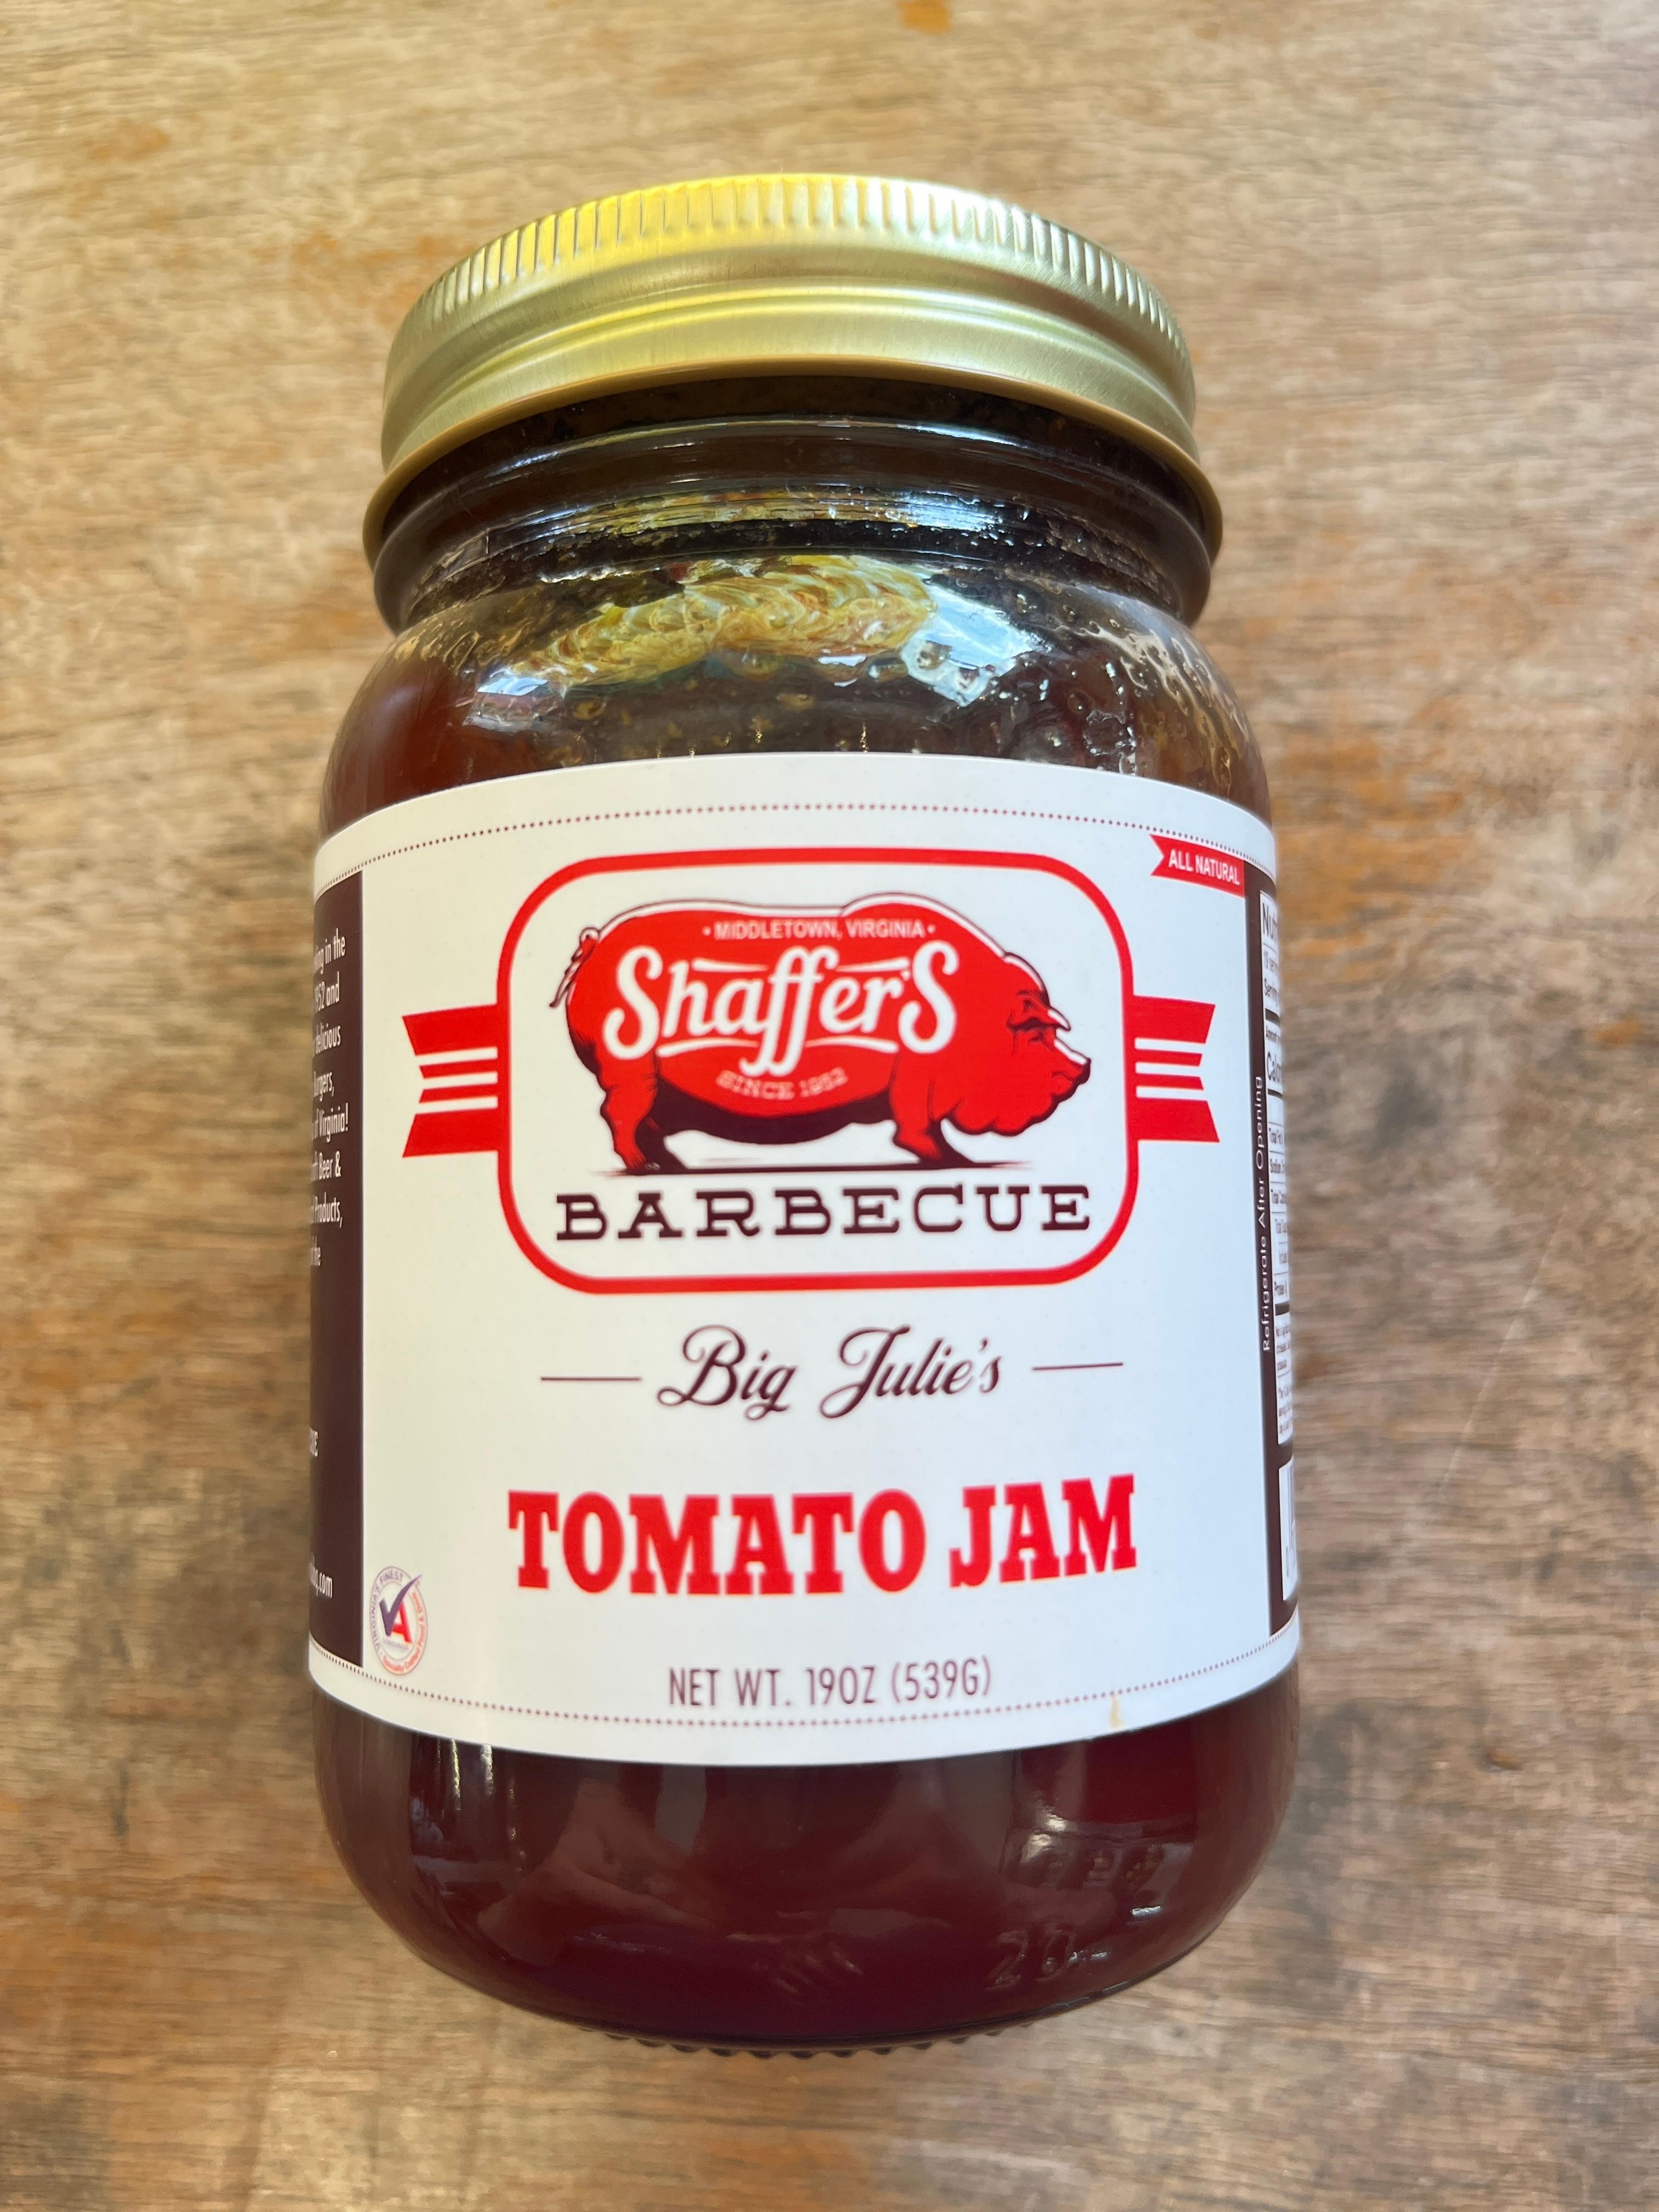 Big Julie's Tomato Jam